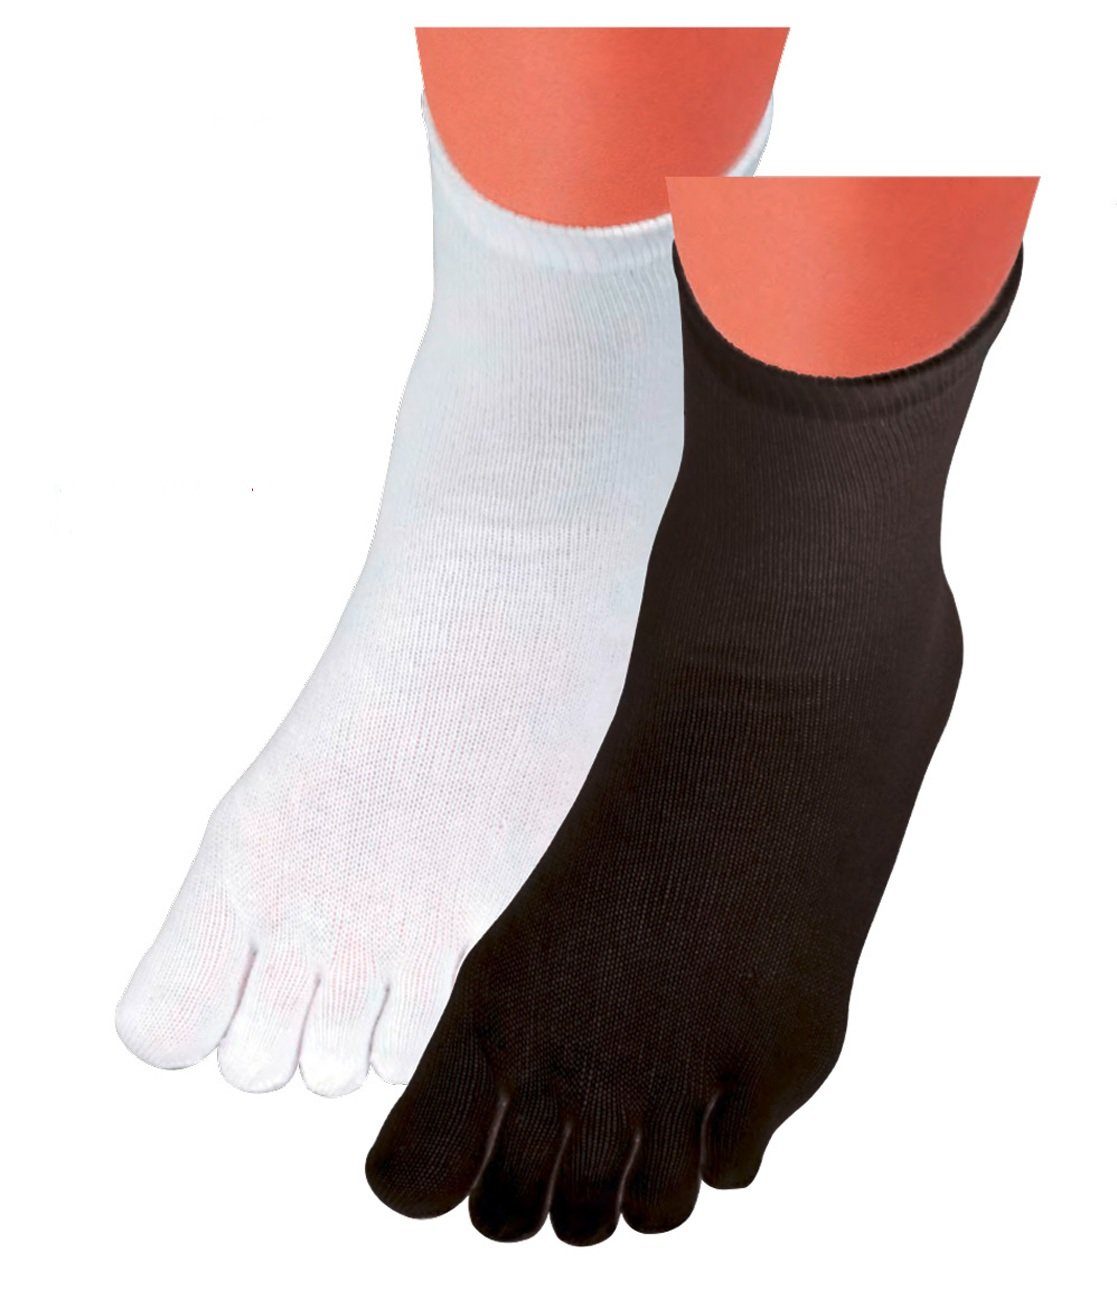 Baumwolle Wowerat der 4 kochfest Zehensocken Basicsocken weiß schwarz Paar in Zehenstrümpfe fünf 5 Zehen Toe Farbe Wollsocken